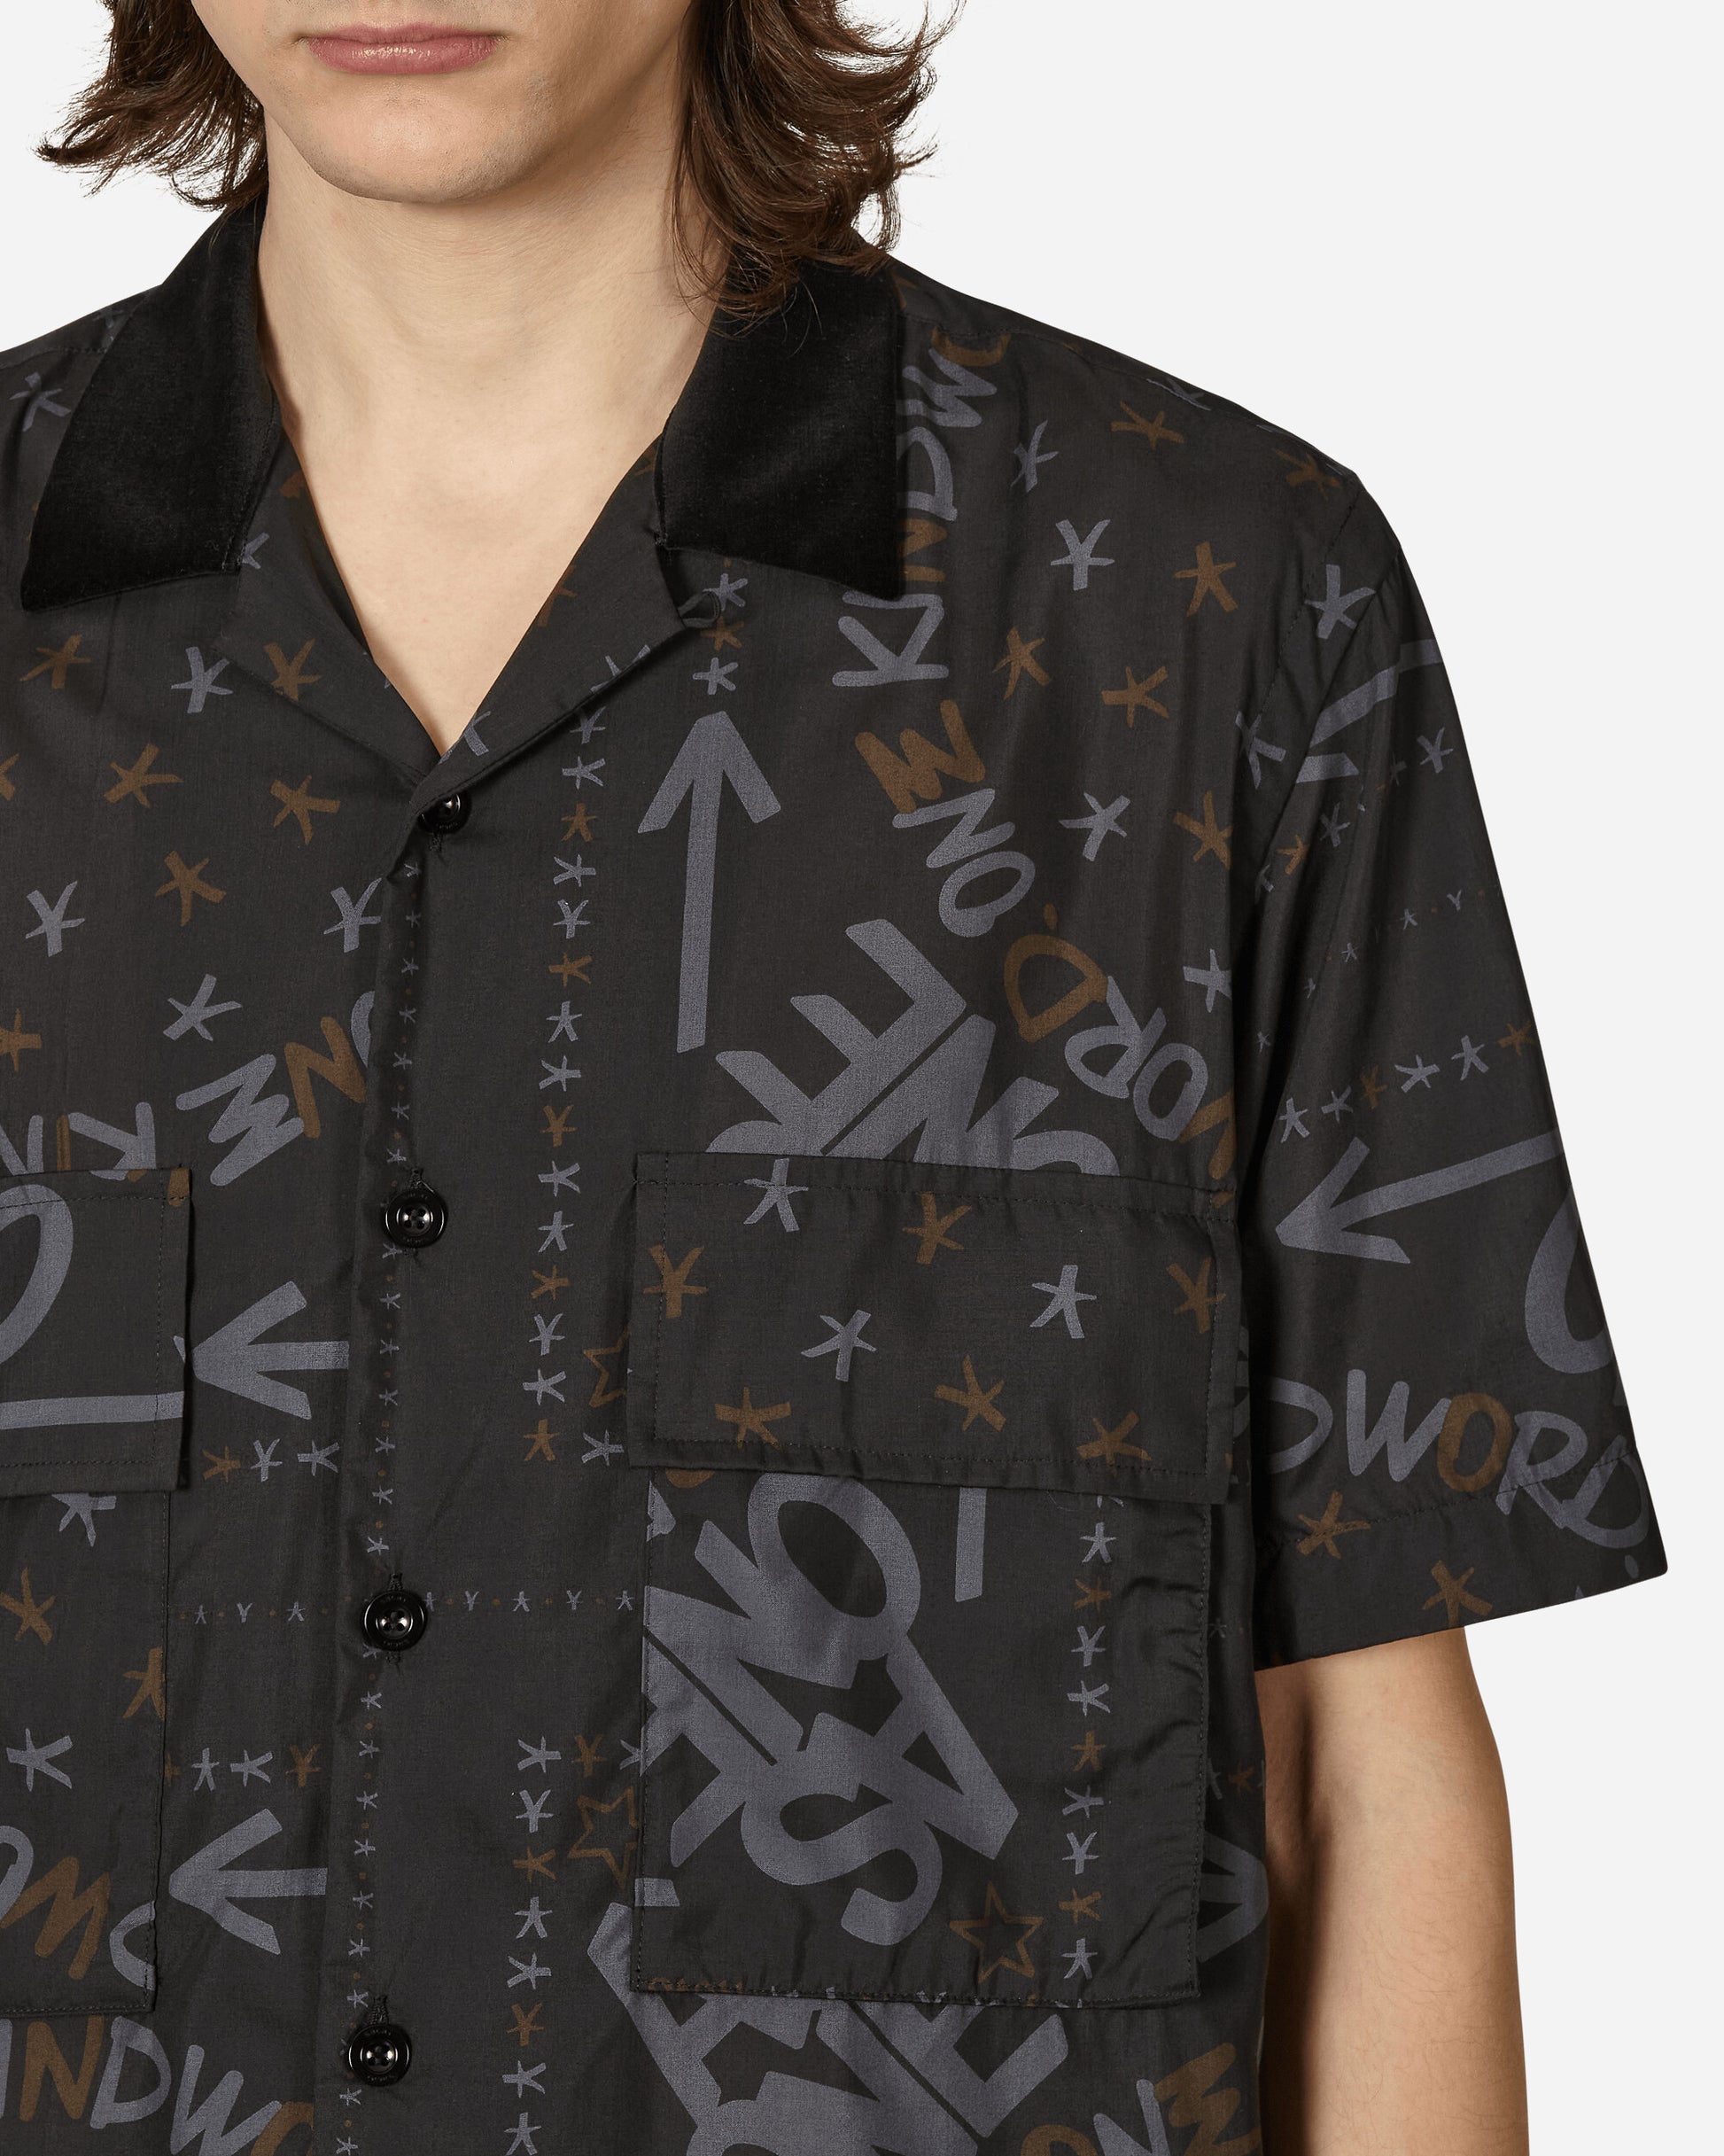 Sacai Eric Haze / Bandana Print Shirt Black Shirts Shortsleeve Shirt 23-02980M 001